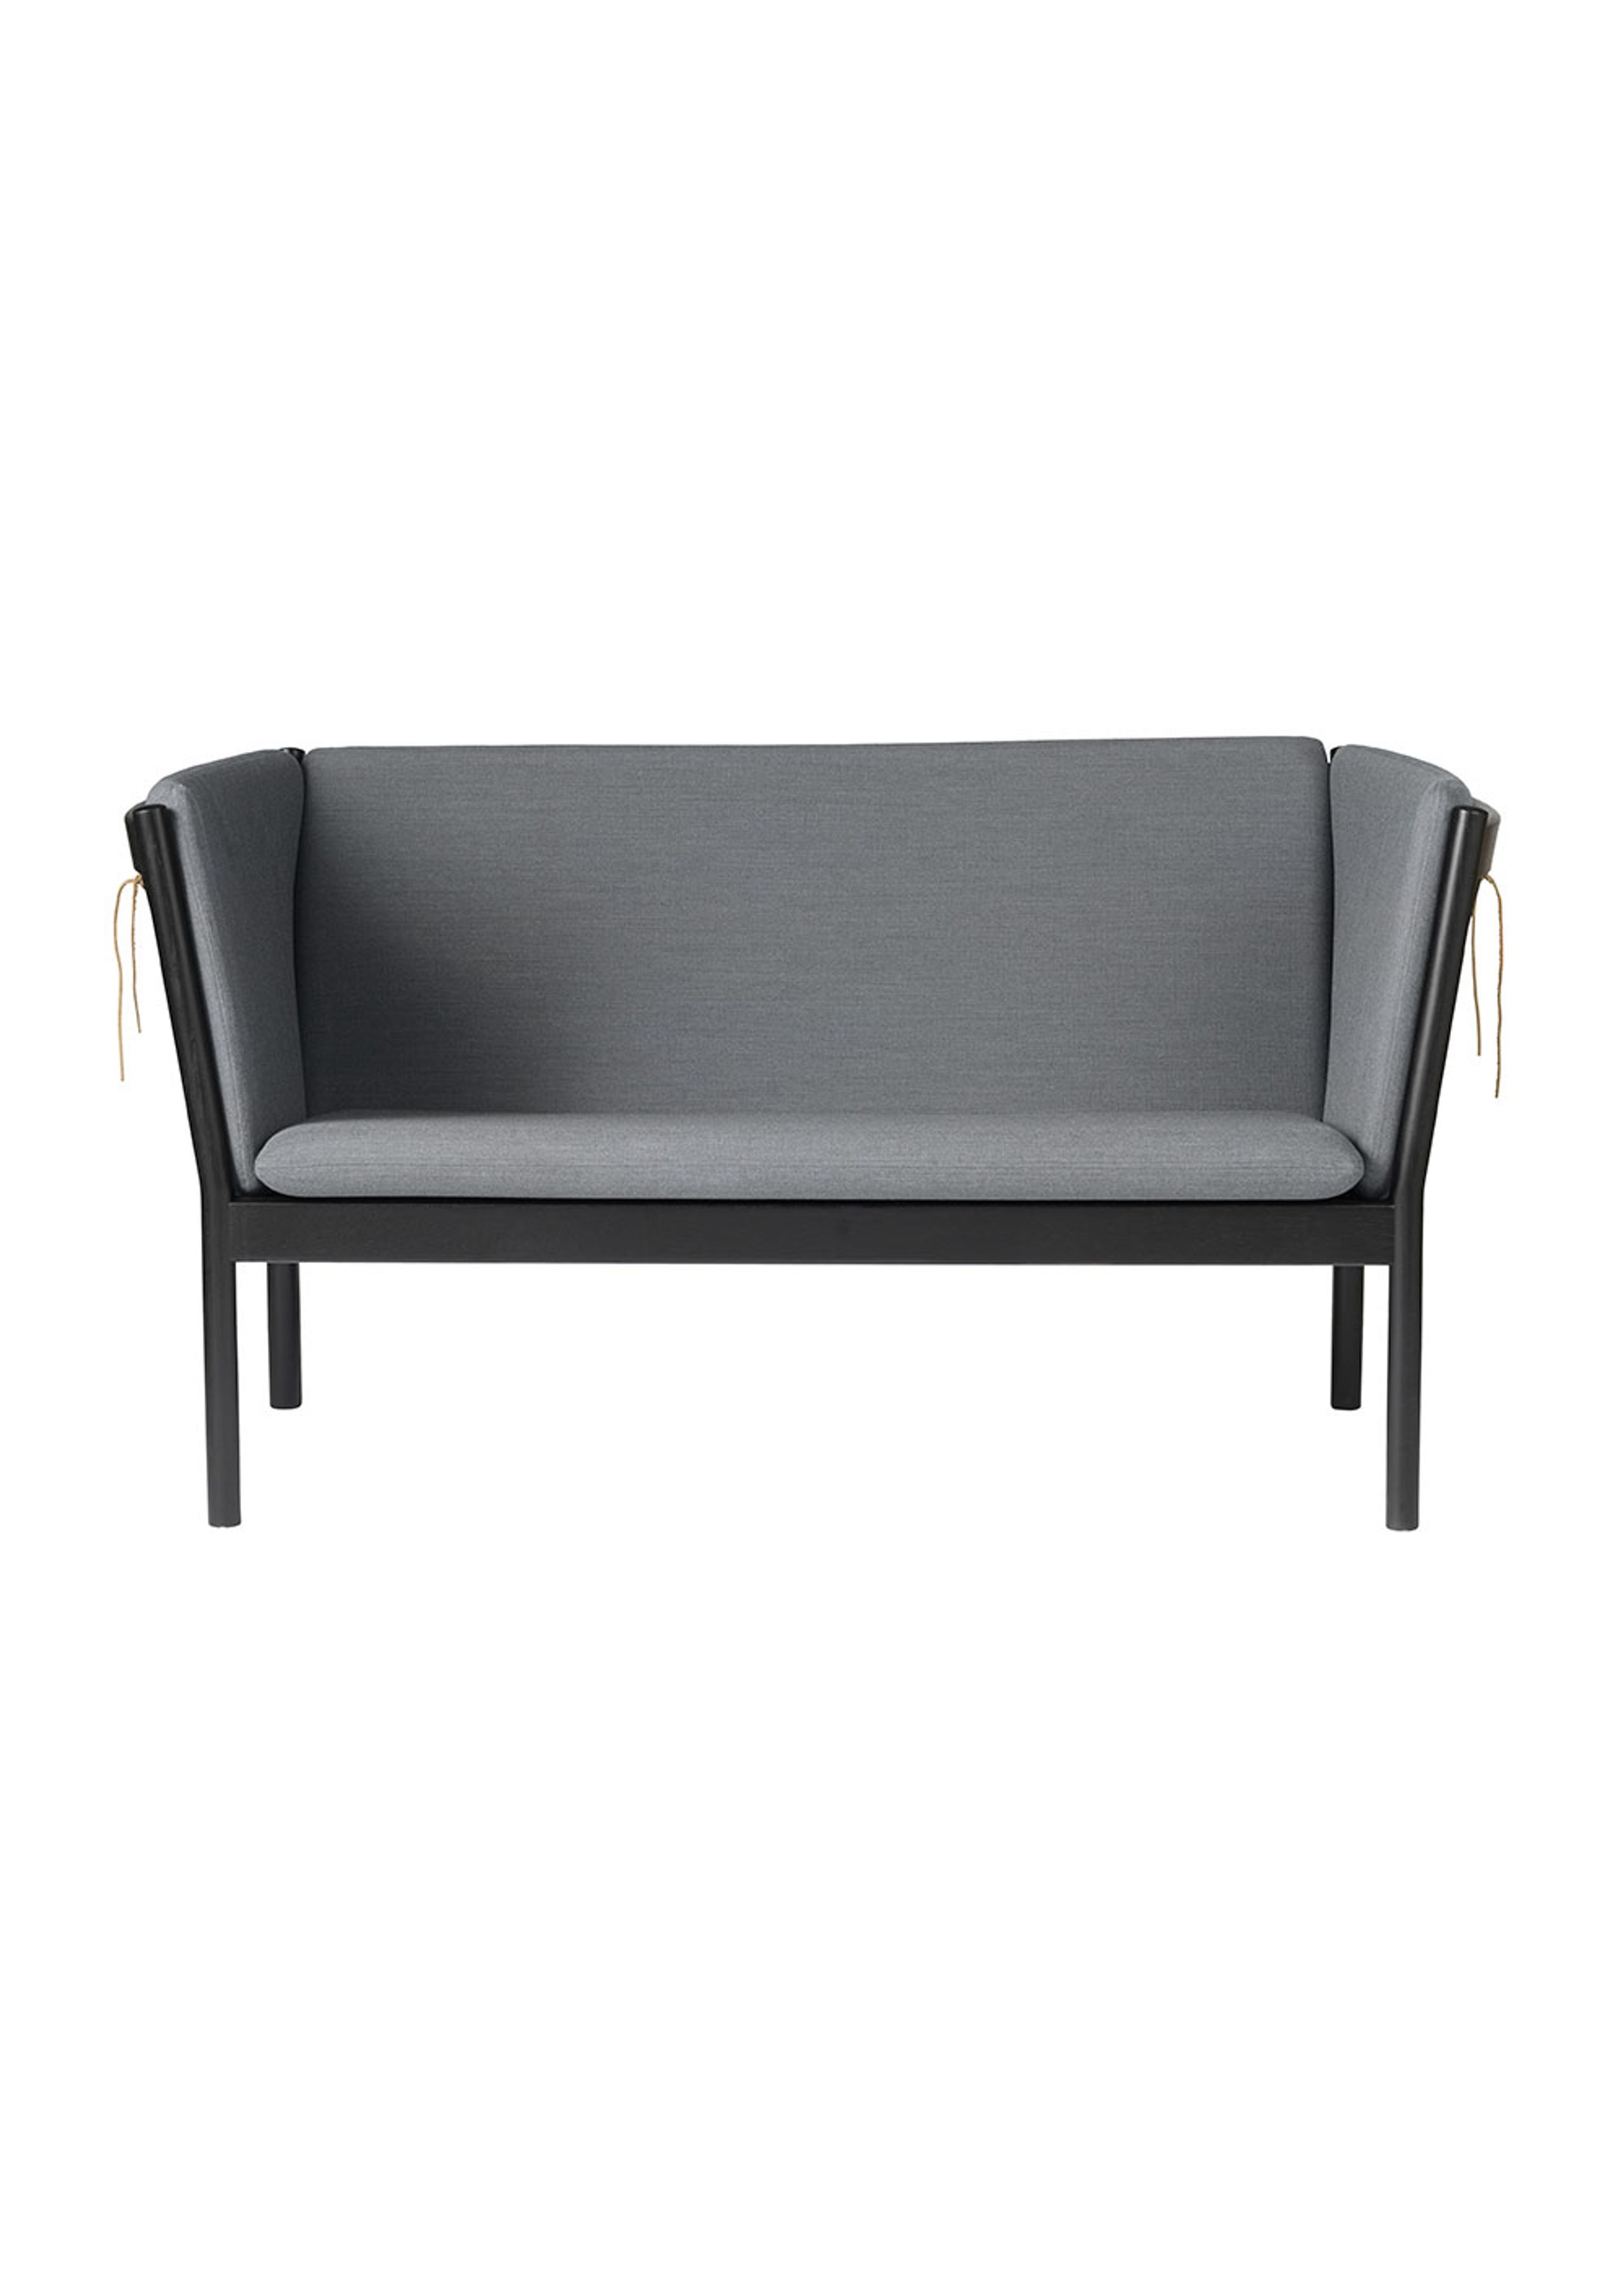 FDB Møbler / Furniture - Sofa - J148 2 pers by Erik Ole Jørgensen - Eg, Sort, Malet / Uld, Antracitgrå